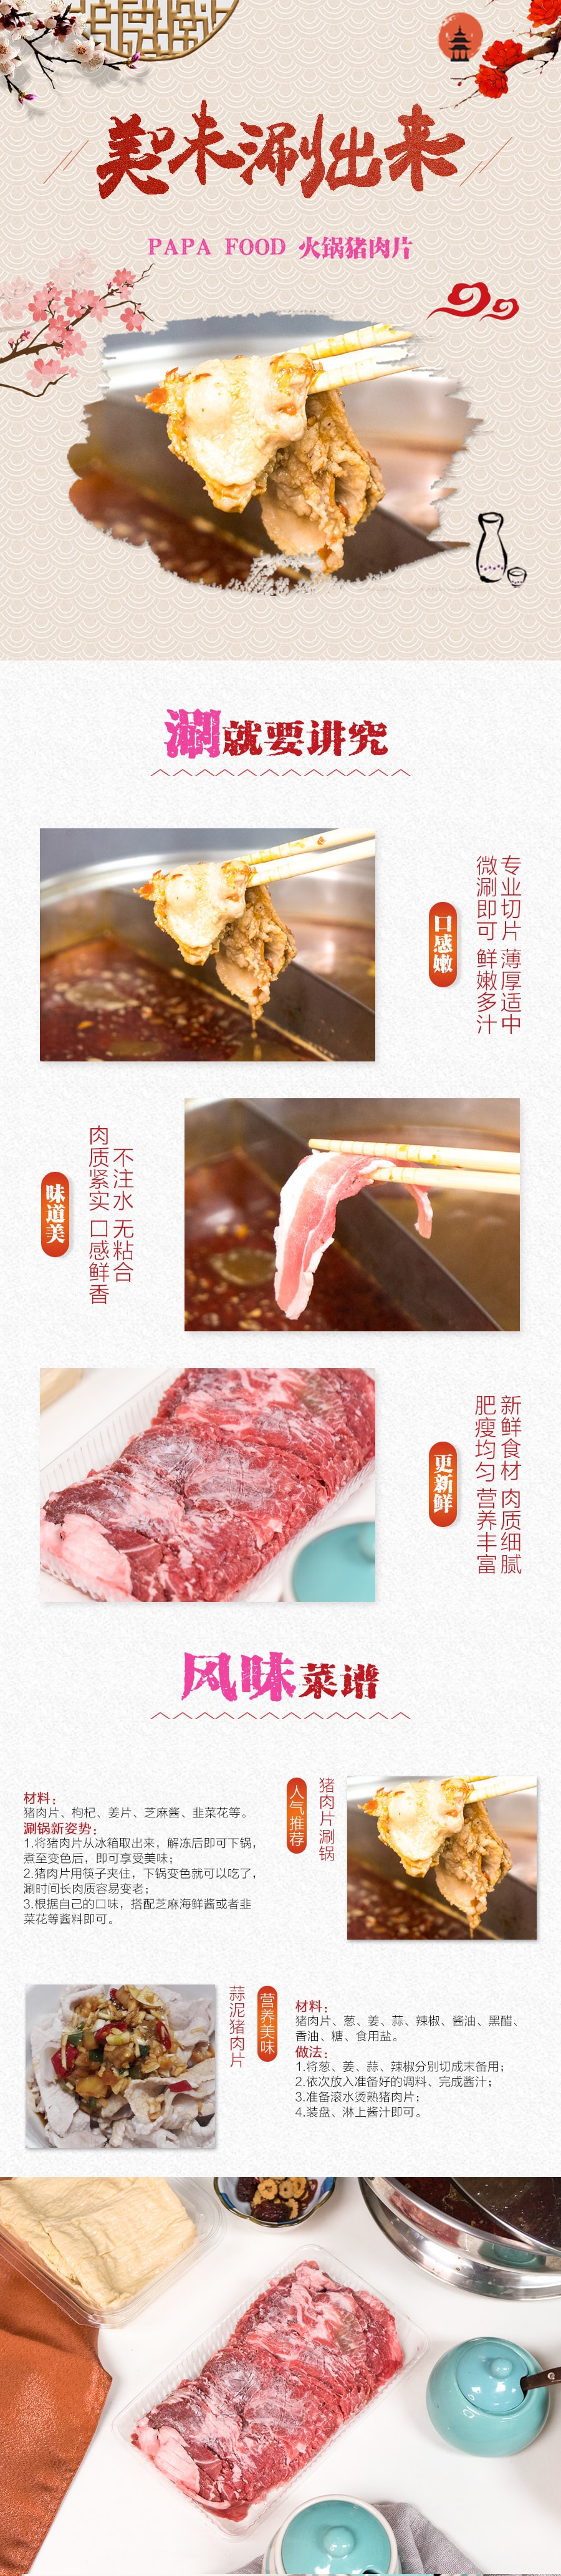 美国PAPA FOOD 火锅猪肉片 453g  (注:每周一周二发货 )